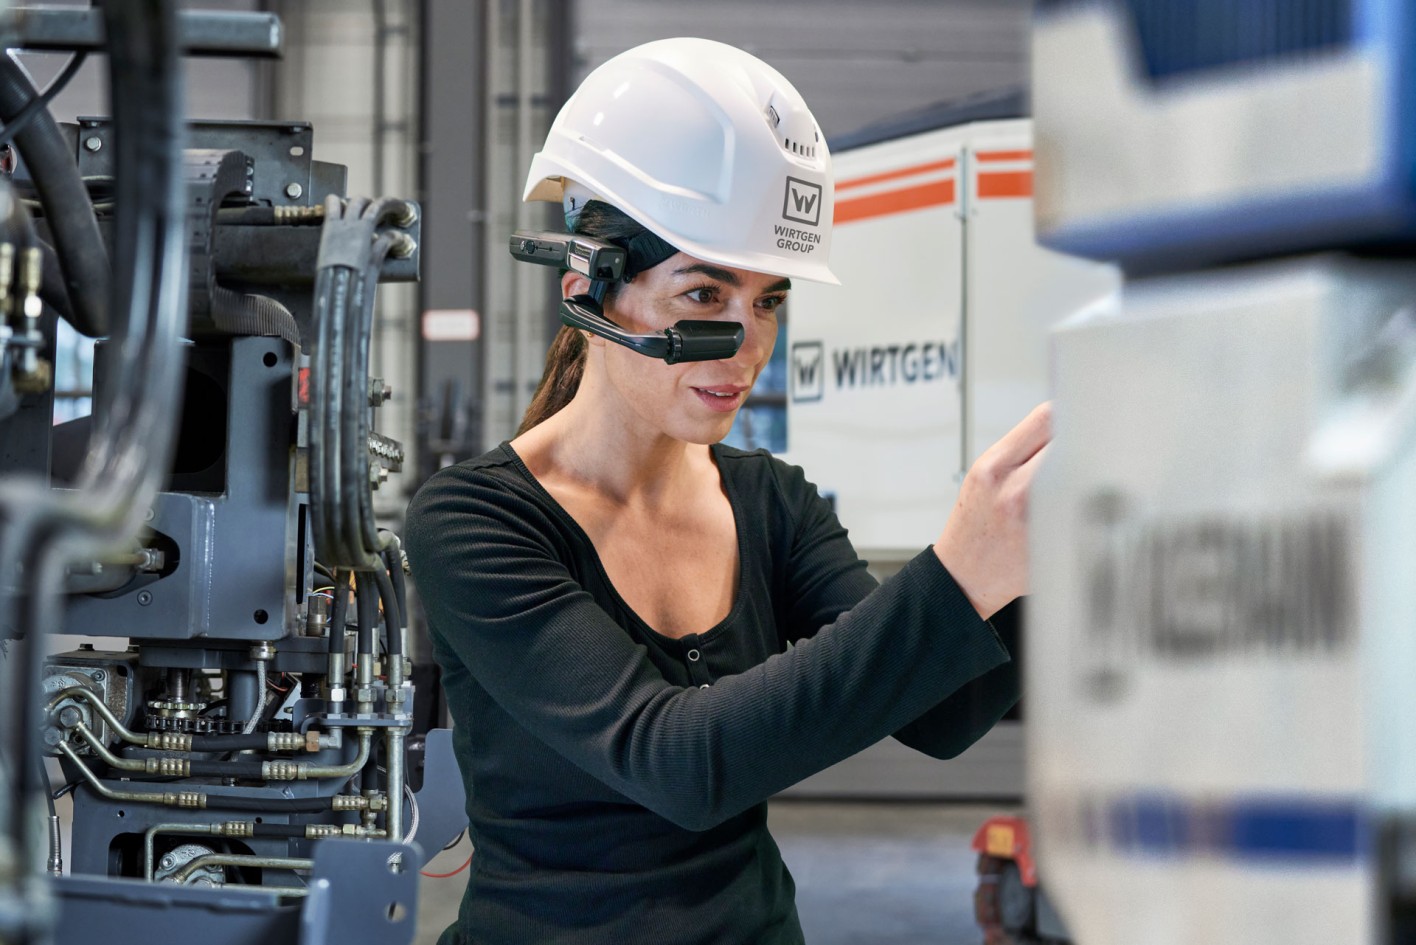 Una meccanica usa gli occhiali “Expert Assist” durante il lavoro su una macchina